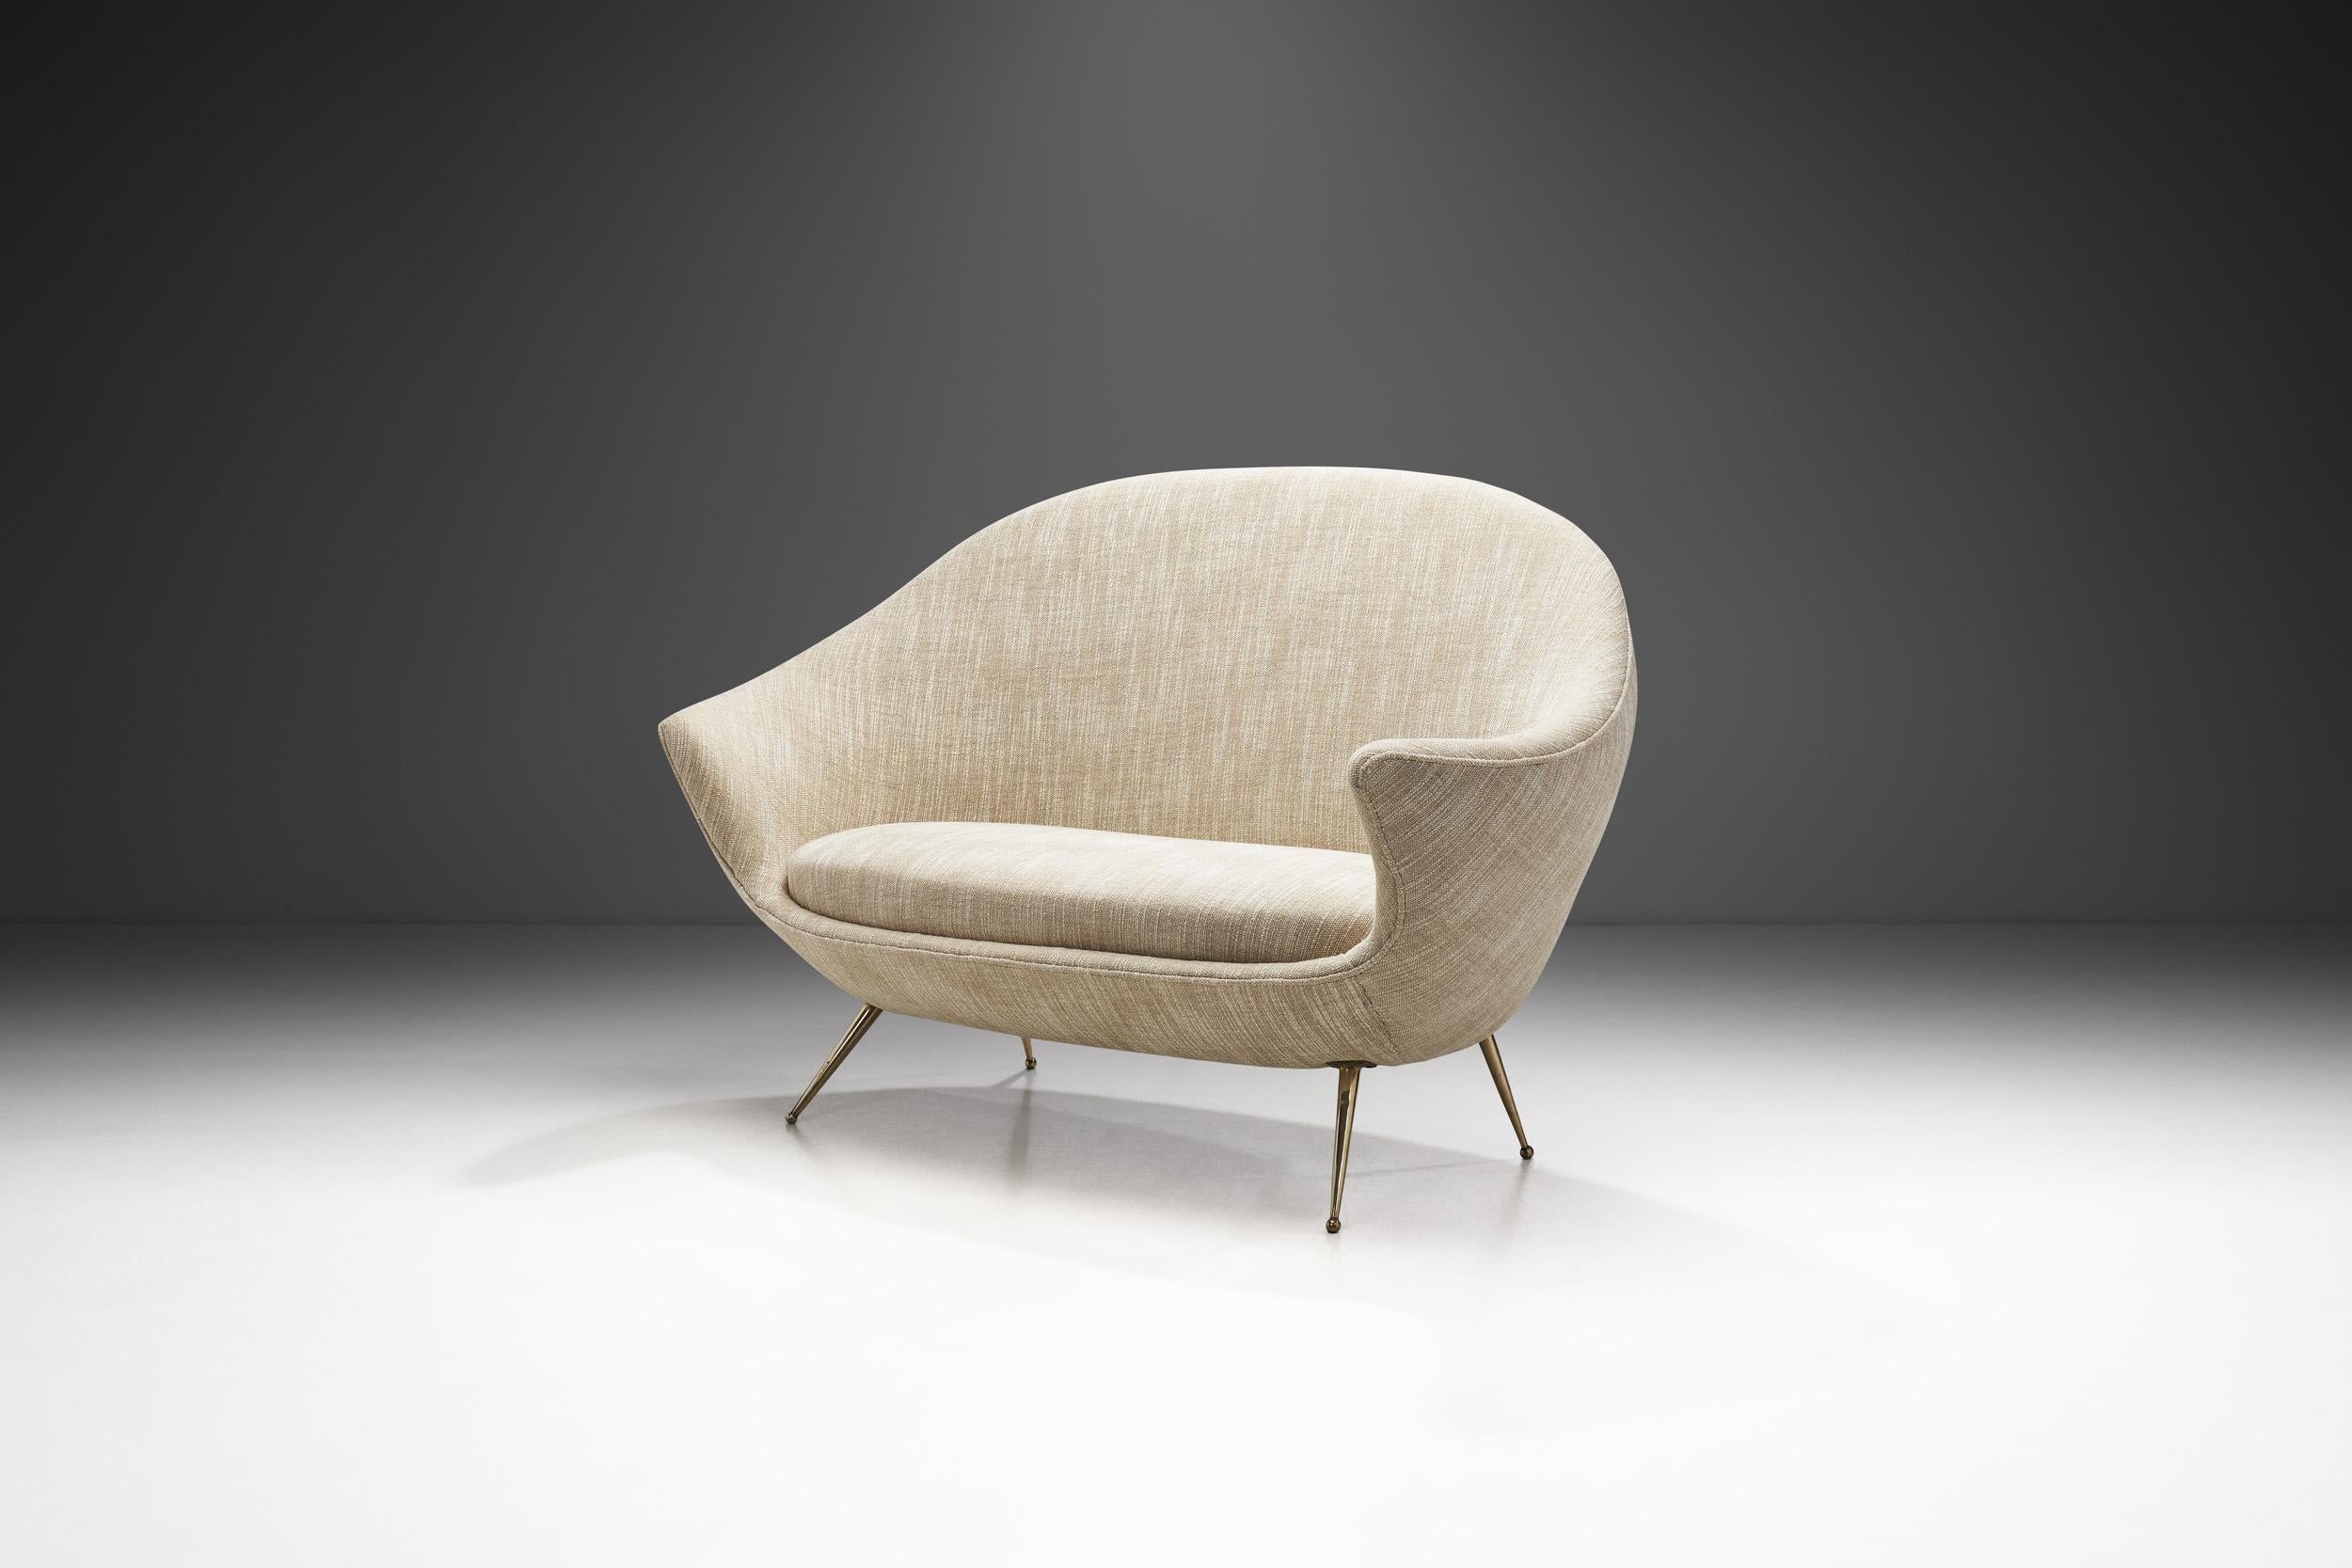 Das italienische Möbel- und Innendesign der Jahrhundertmitte ist bekannt für seine eleganten, organischen Formen. Die Sitzmöbelmodelle dieser Epoche - darunter auch dieses Sofa - wurden geschaffen, um den Geist der Wiedergeburt des Möbeldesigns der